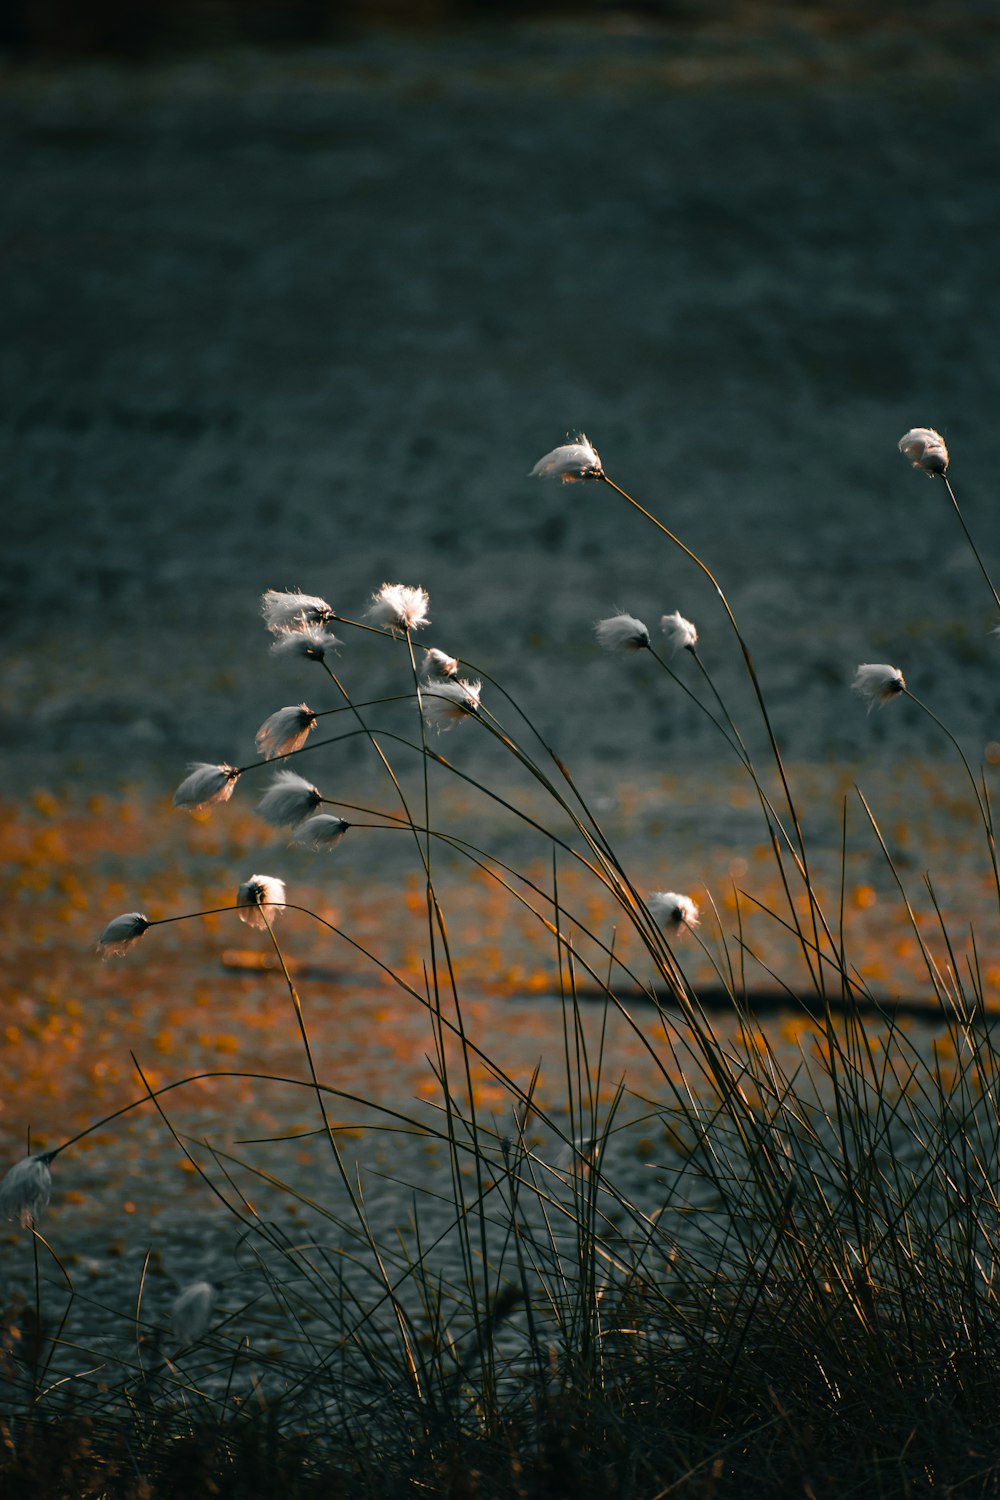 풀로 덮인 들판 위에 앉아 있는 흰 꽃 무리